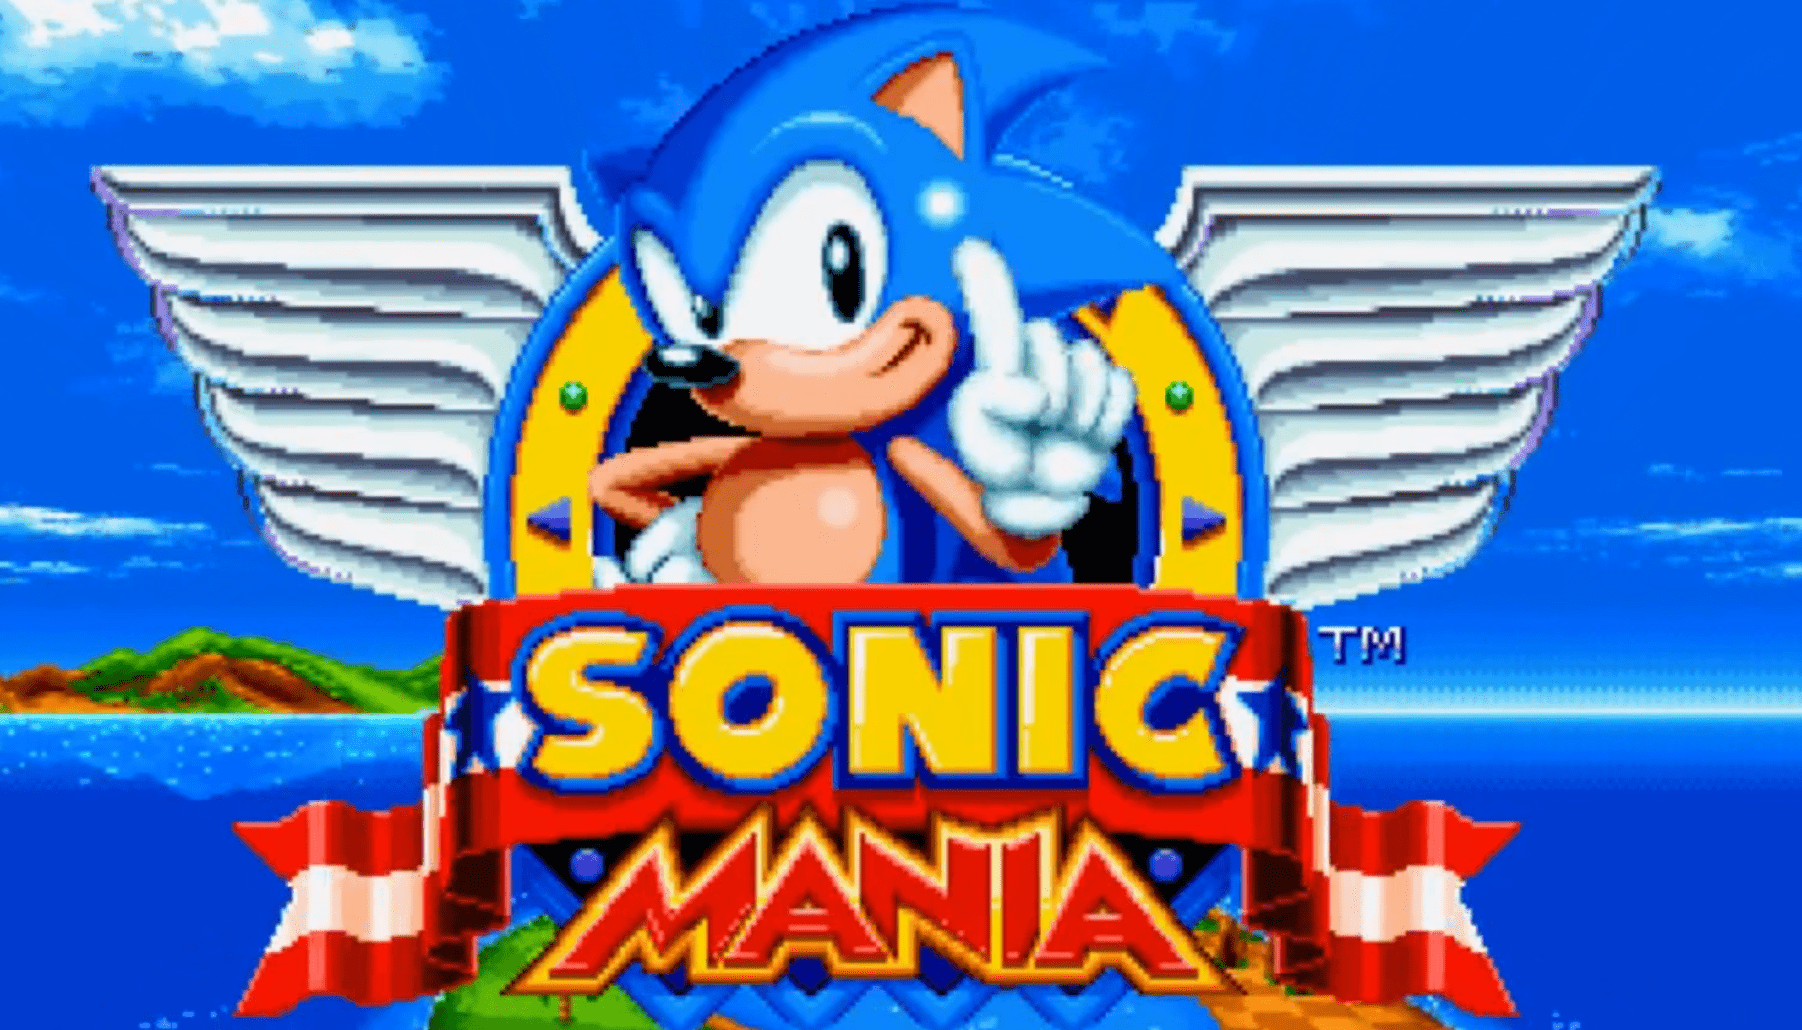 Sonic Mania y Horizon Chase Turbo son los juegos gratis de Epic Games hasta julio 1 (2021)